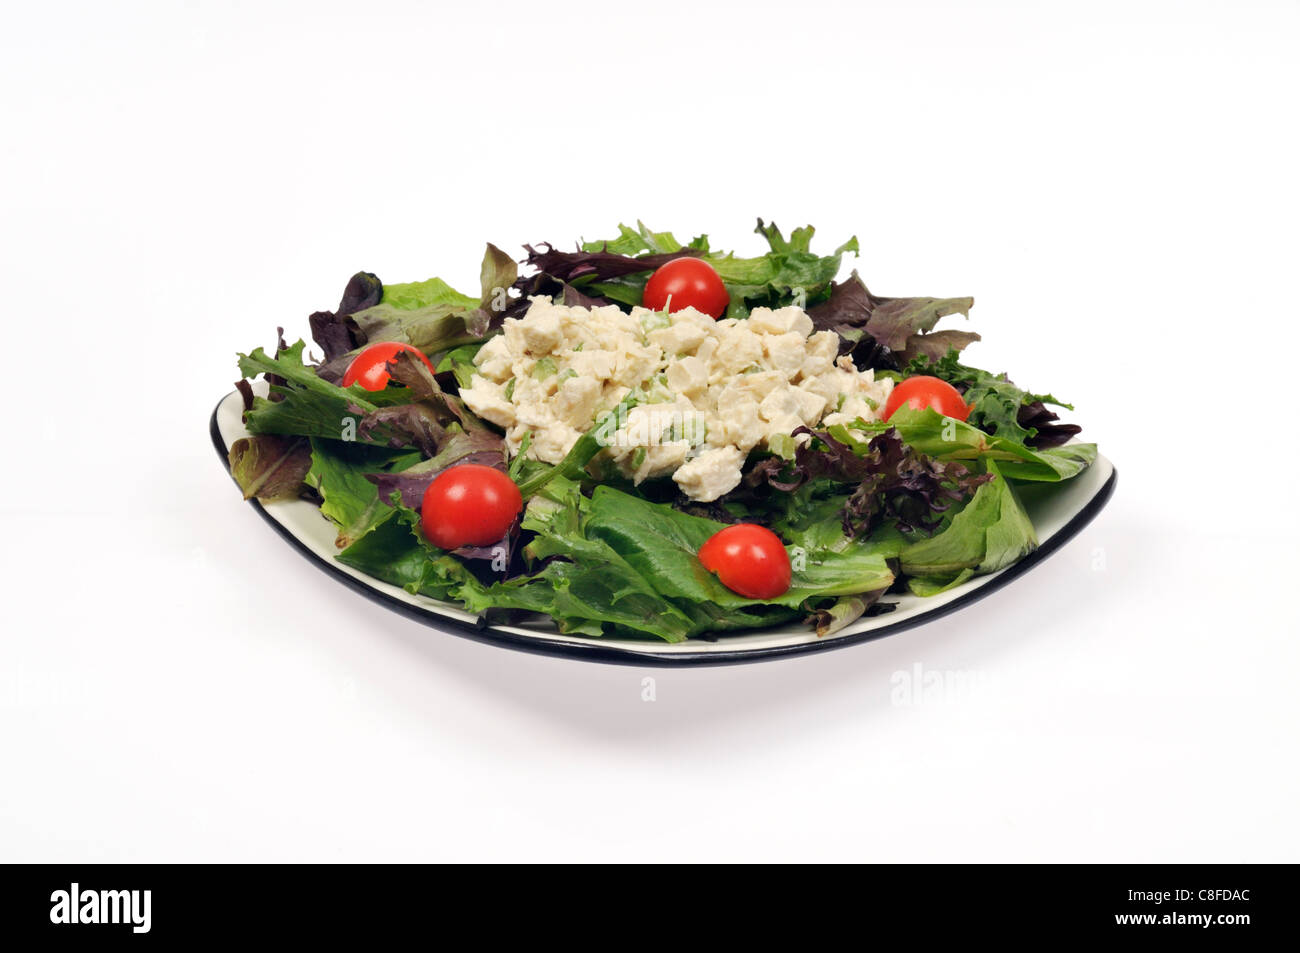 Plato de Ensalada de Pollo con apio, mayonesa y tomate en ensaladas verdes sobre fondo blanco del recorte. Foto de stock